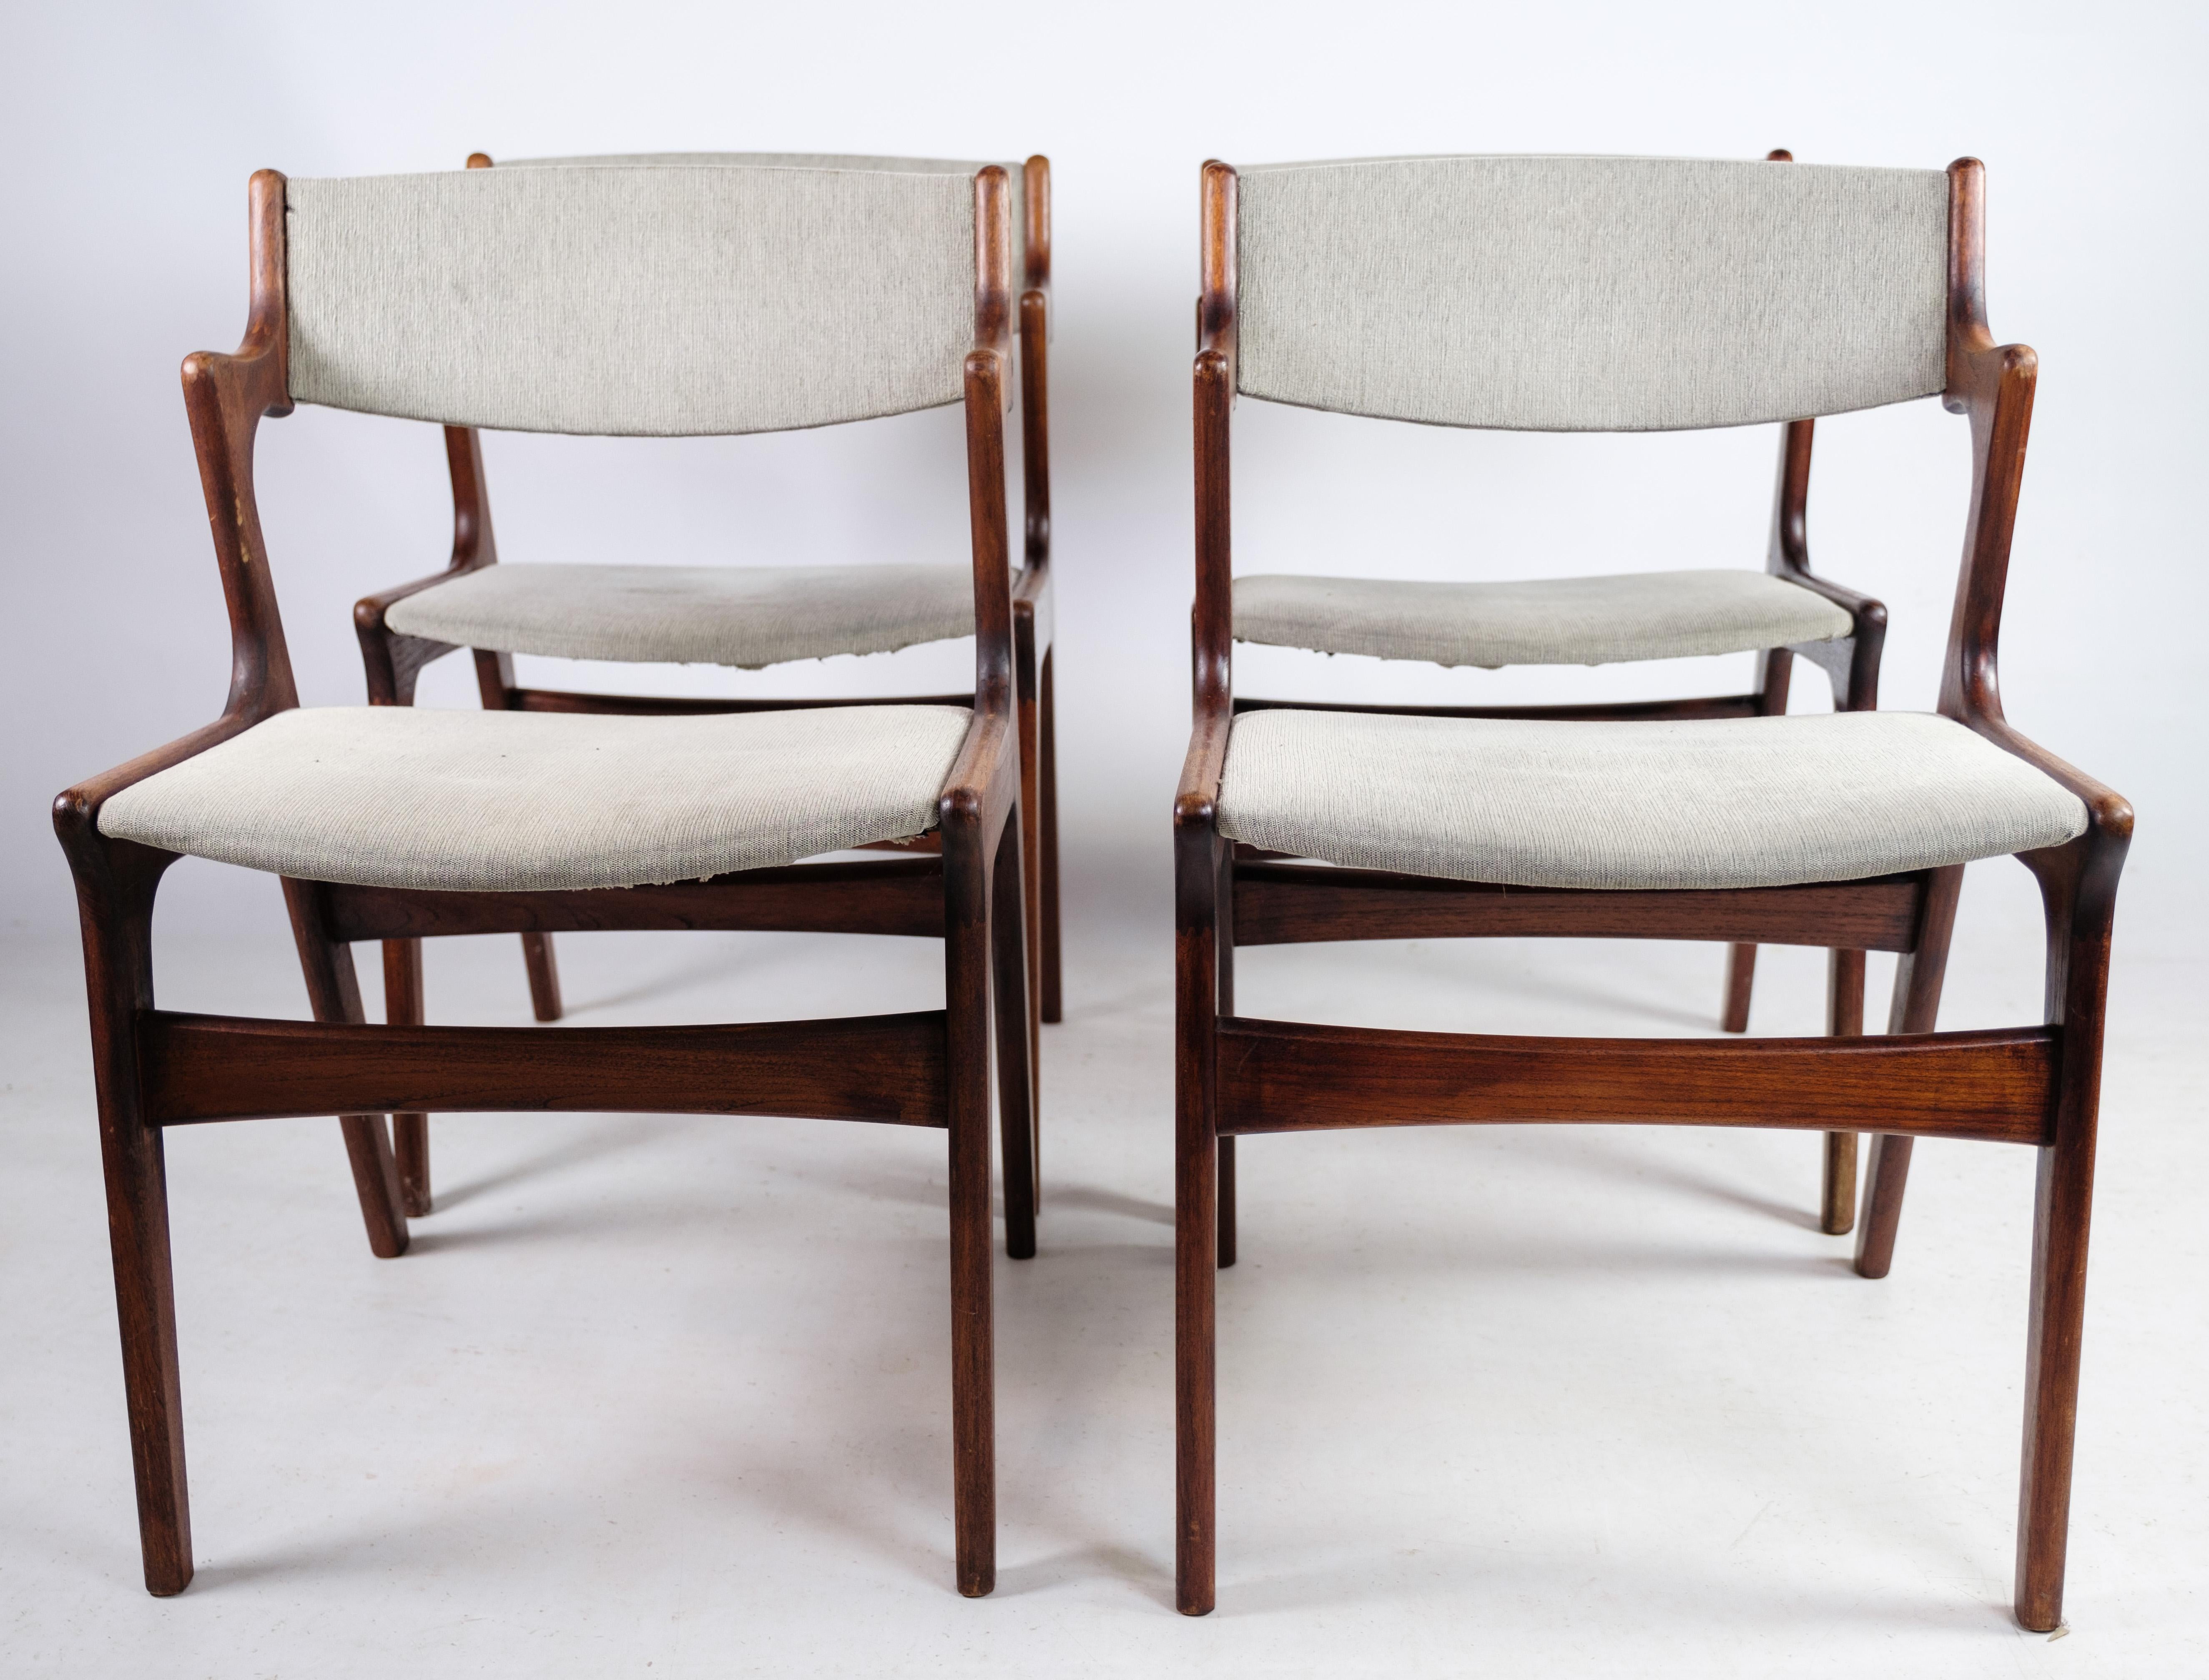 Dieses Set aus vier Sesseln aus Teakholz, das von Nova Furniture in den 1960er Jahren entworfen wurde, ist ein zeitloser Ausdruck des dänischen Designs der Mitte des Jahrhunderts. Mit ihren schlanken Linien, dem edlen Teakholz-Finish und der